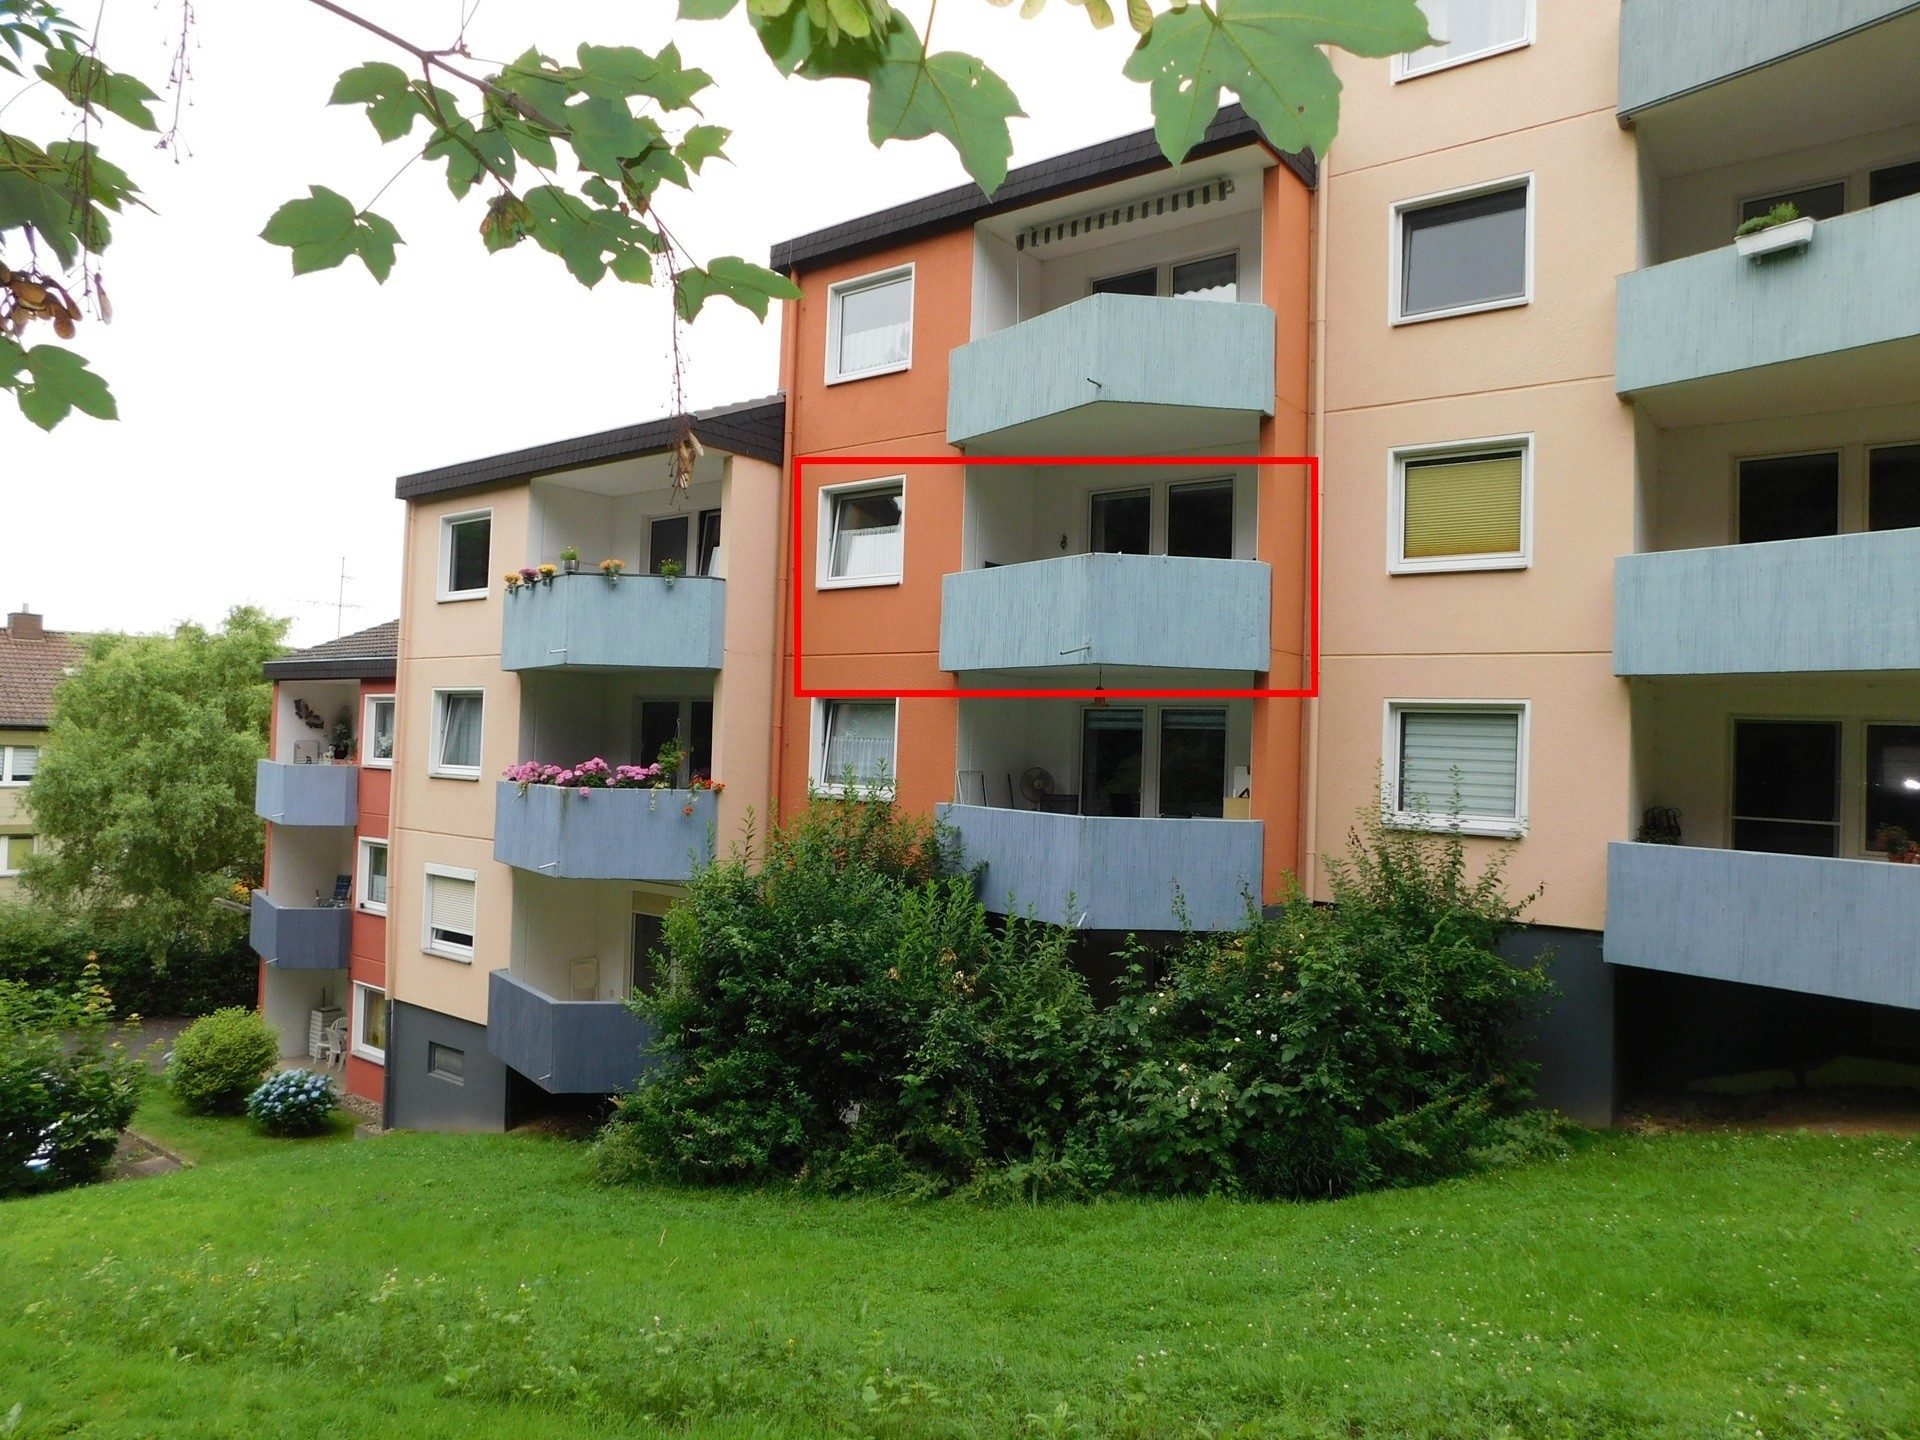 Immobilienangebot - Melsungen - Alle - 2 ZKB-Wohnung mit Balkon als attraktive Kapitalanlage! Keine Käuferprovision!